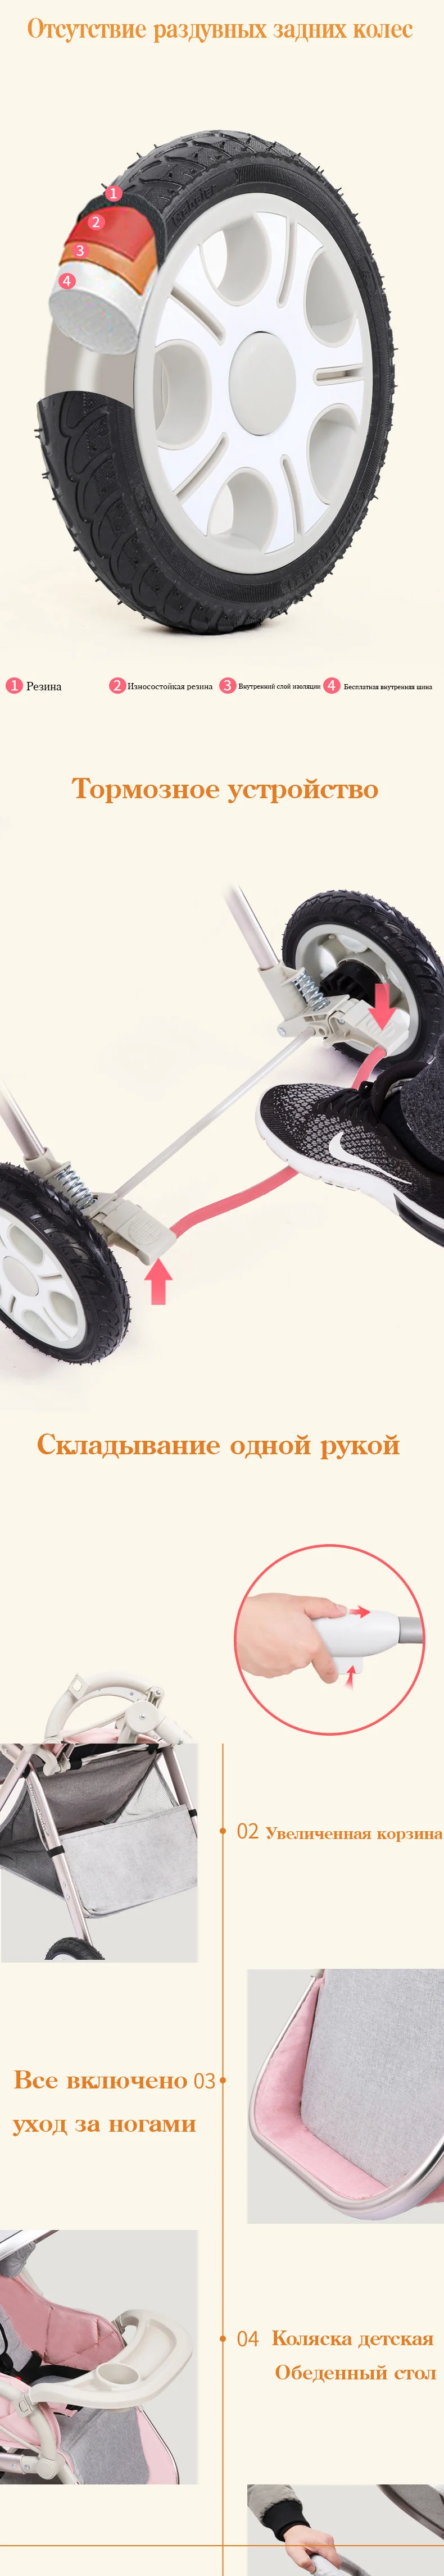 PRYDYC/детская коляска, двусторонняя, детская коляска, ультра-светильник, зонт, коляска, складная, переносная коляска-тележка, на самолете, светильник